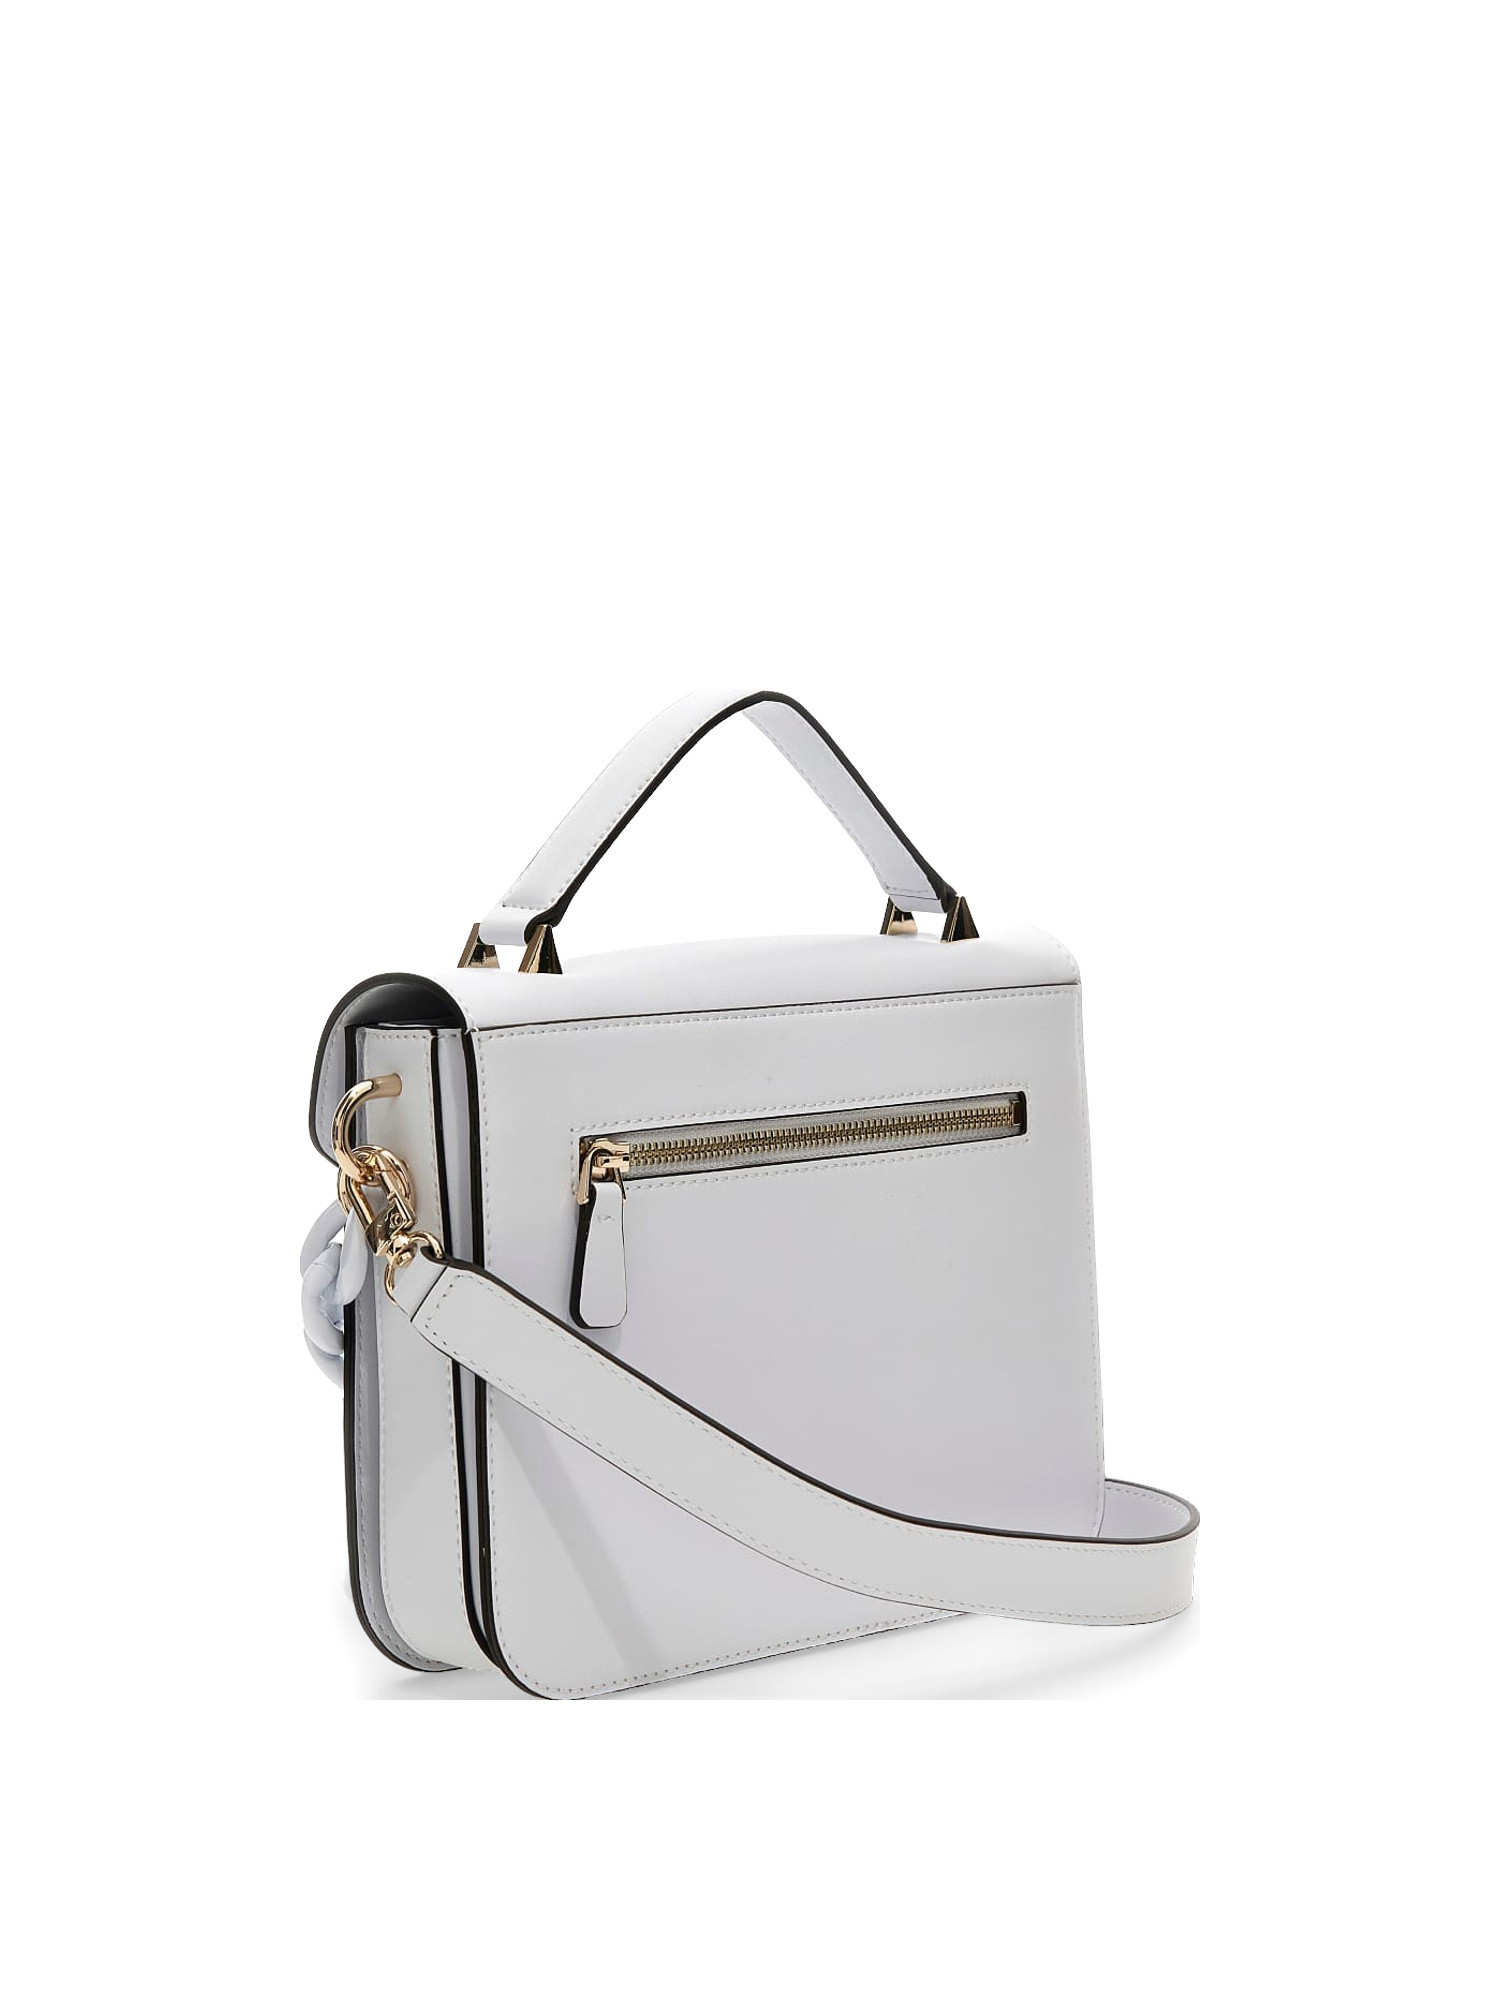 Guess - Corina handbag, White, large image number 1